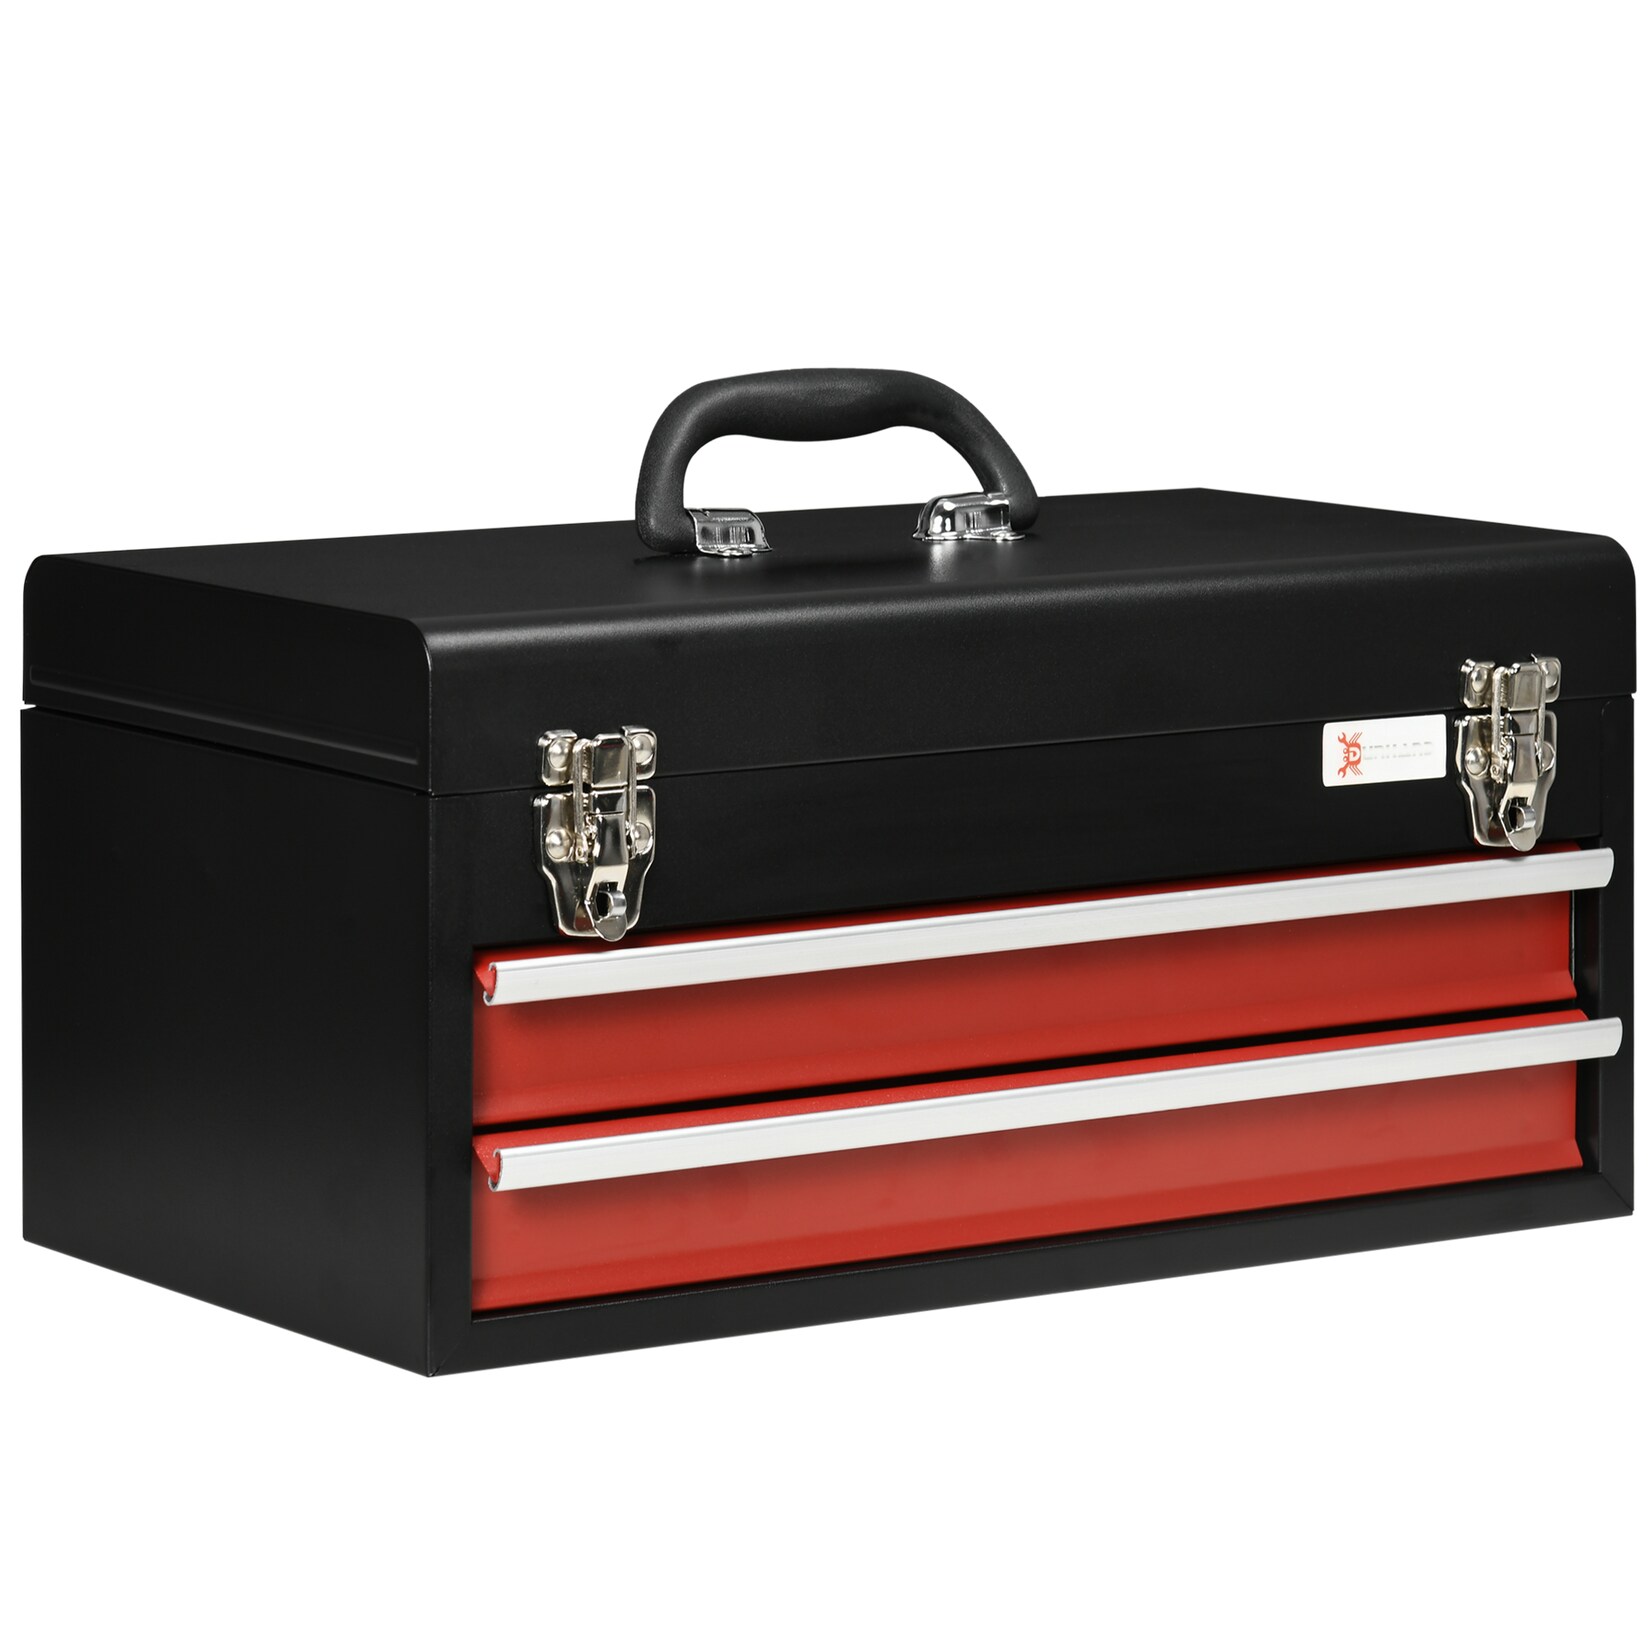 DURHAND Werkzeugkiste mit 2 Schubladen schwarz, rot 46L x 24B x 22H cm